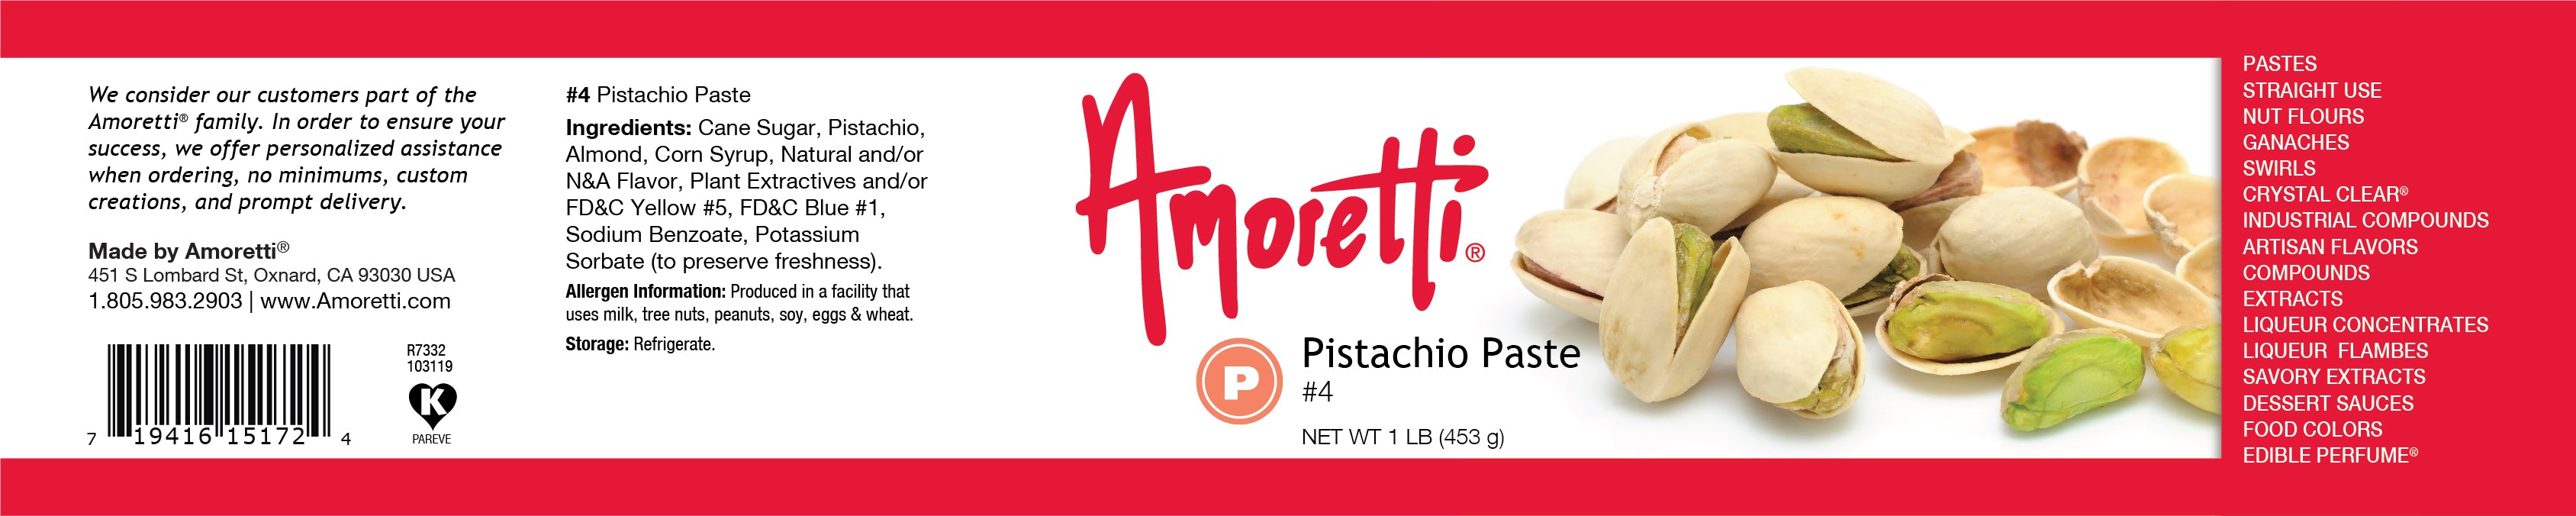 Pistachio Paste (refrigerate)